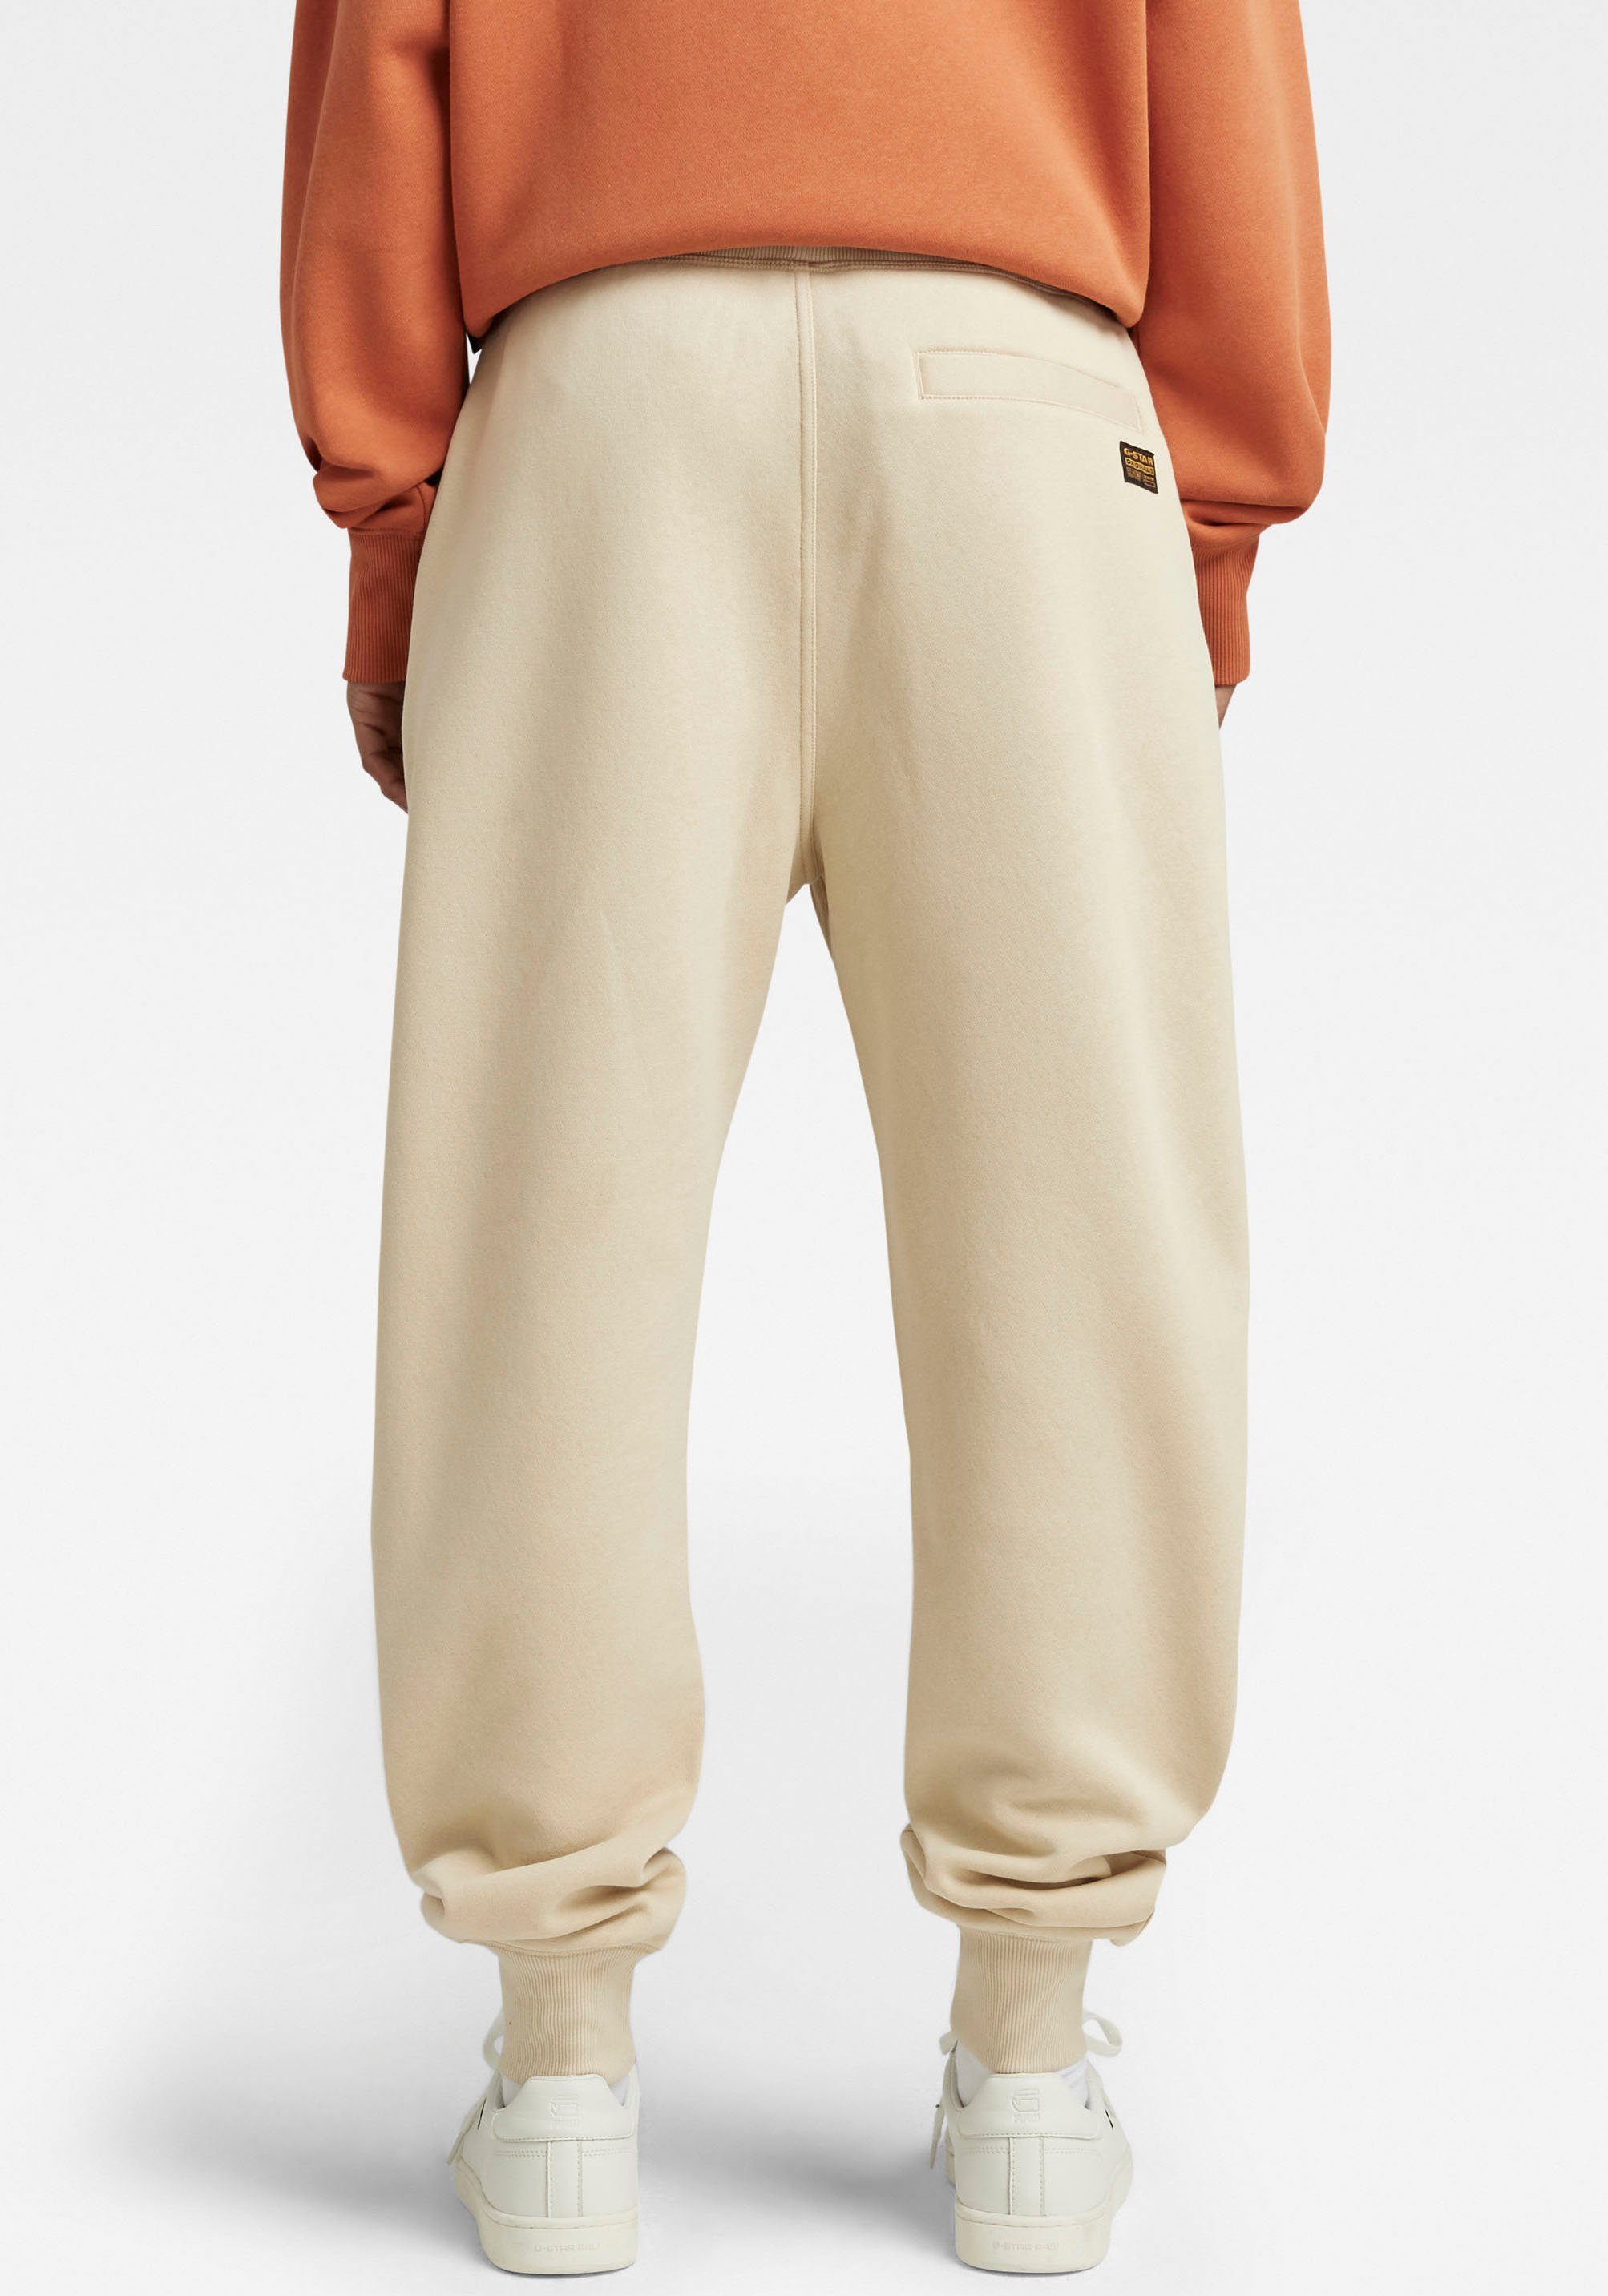 G-Star RAW Sweatpants Bund brown rice und Tunnelzug Premium mit elastischen Sweathose core 2.0